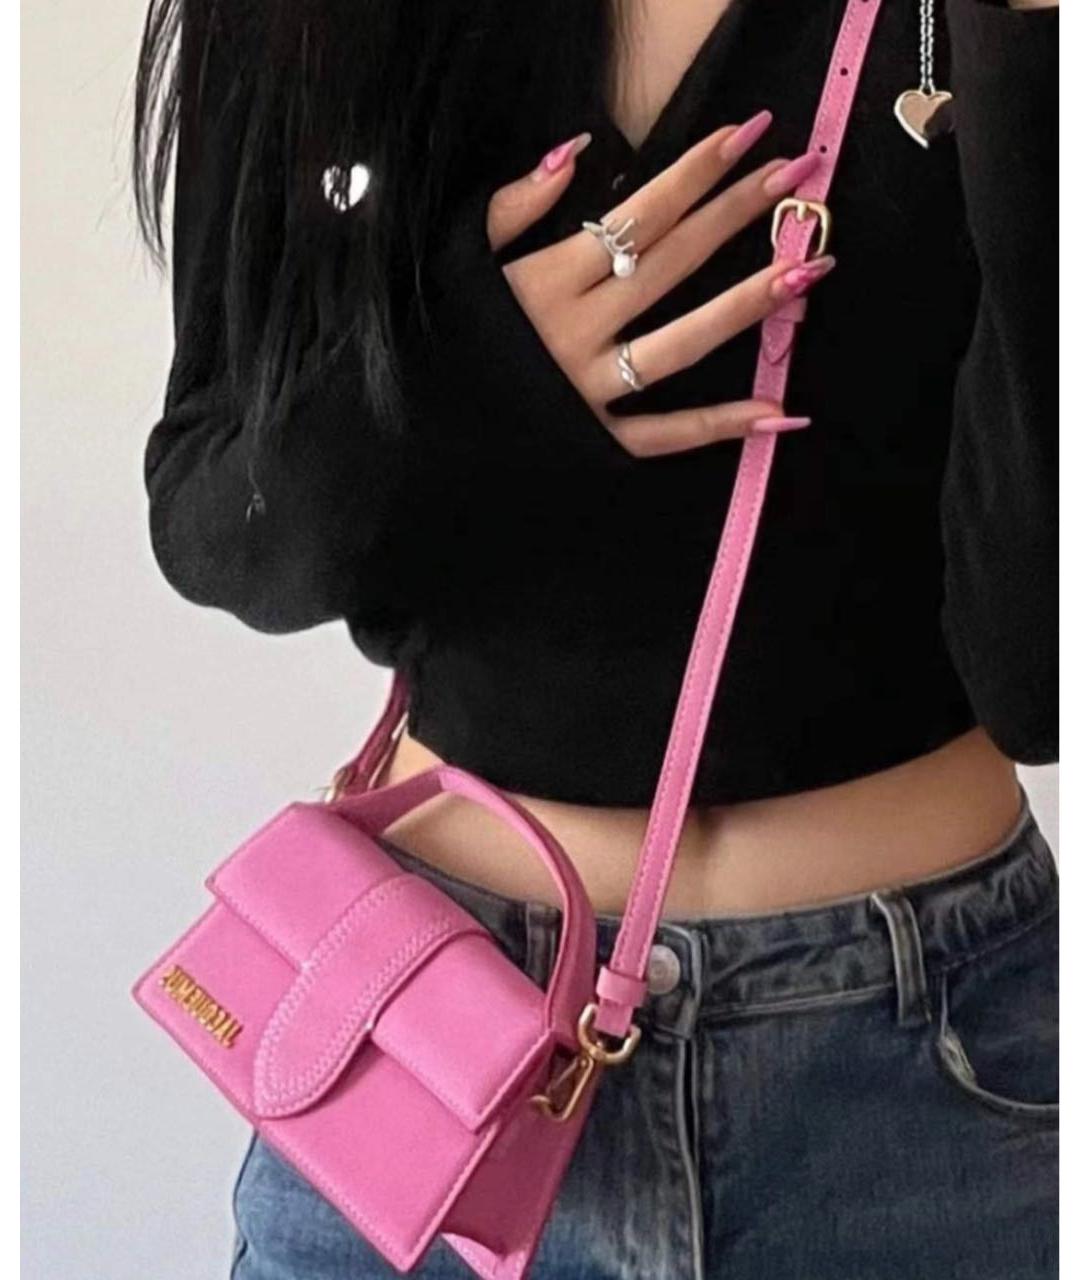 JACQUEMUS Розовая кожаная сумка с короткими ручками, фото 4